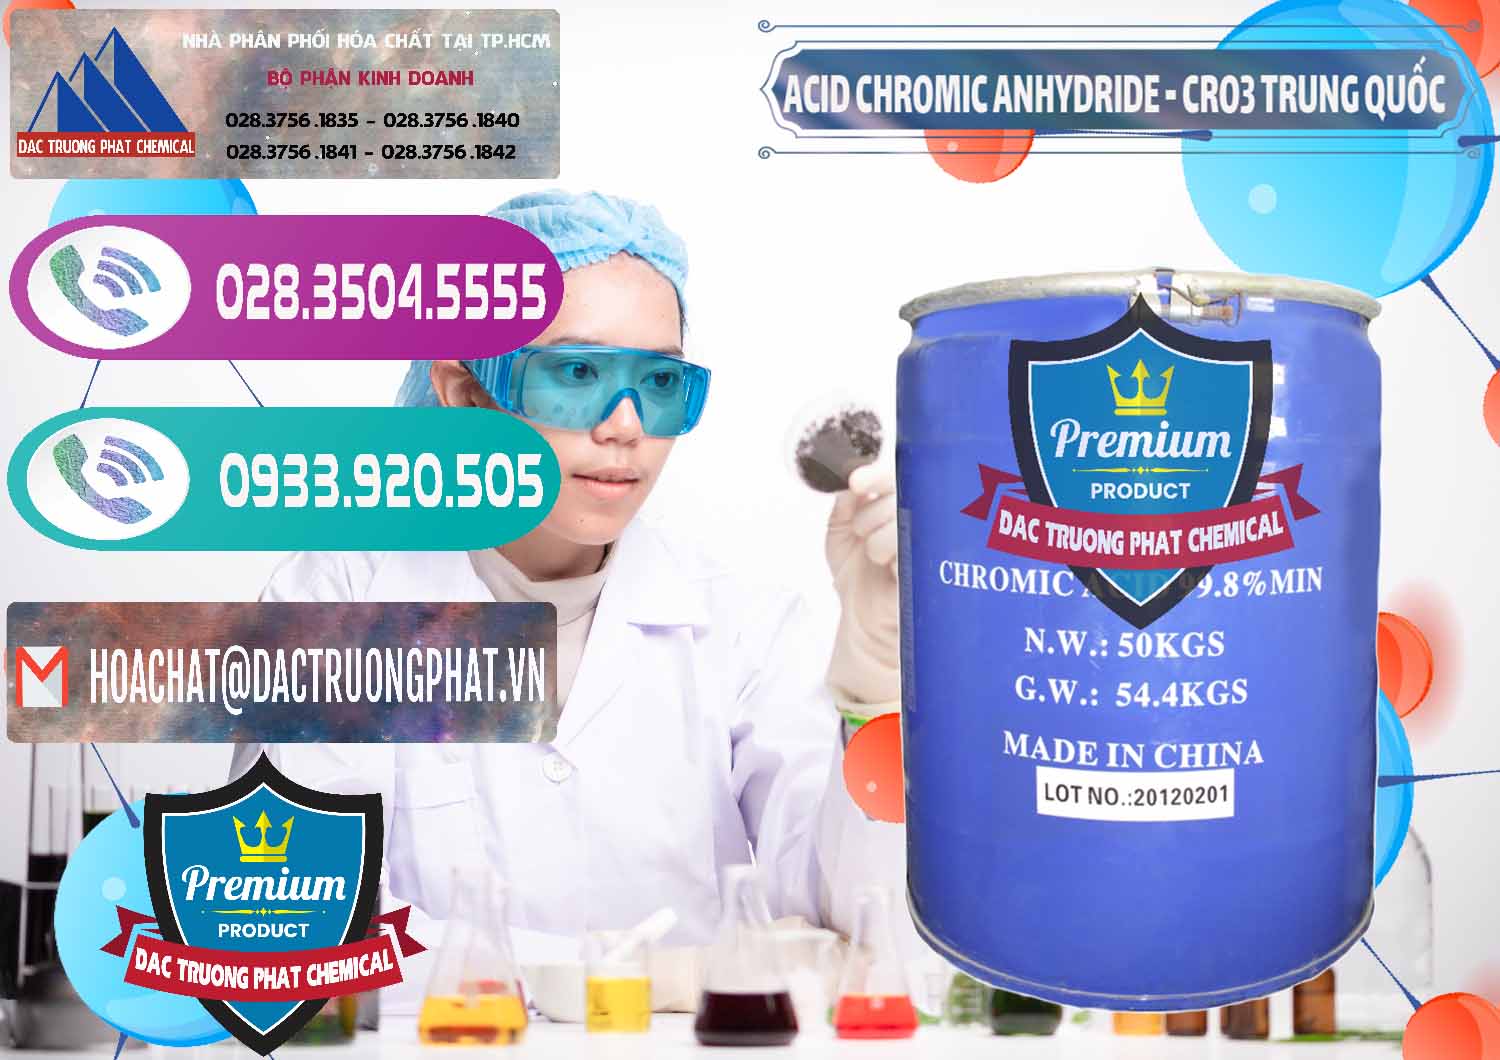 Cty bán và cung cấp Acid Chromic Anhydride - Cromic CRO3 Trung Quốc China - 0007 - Cty cung cấp & nhập khẩu hóa chất tại TP.HCM - hoachatxulynuoc.com